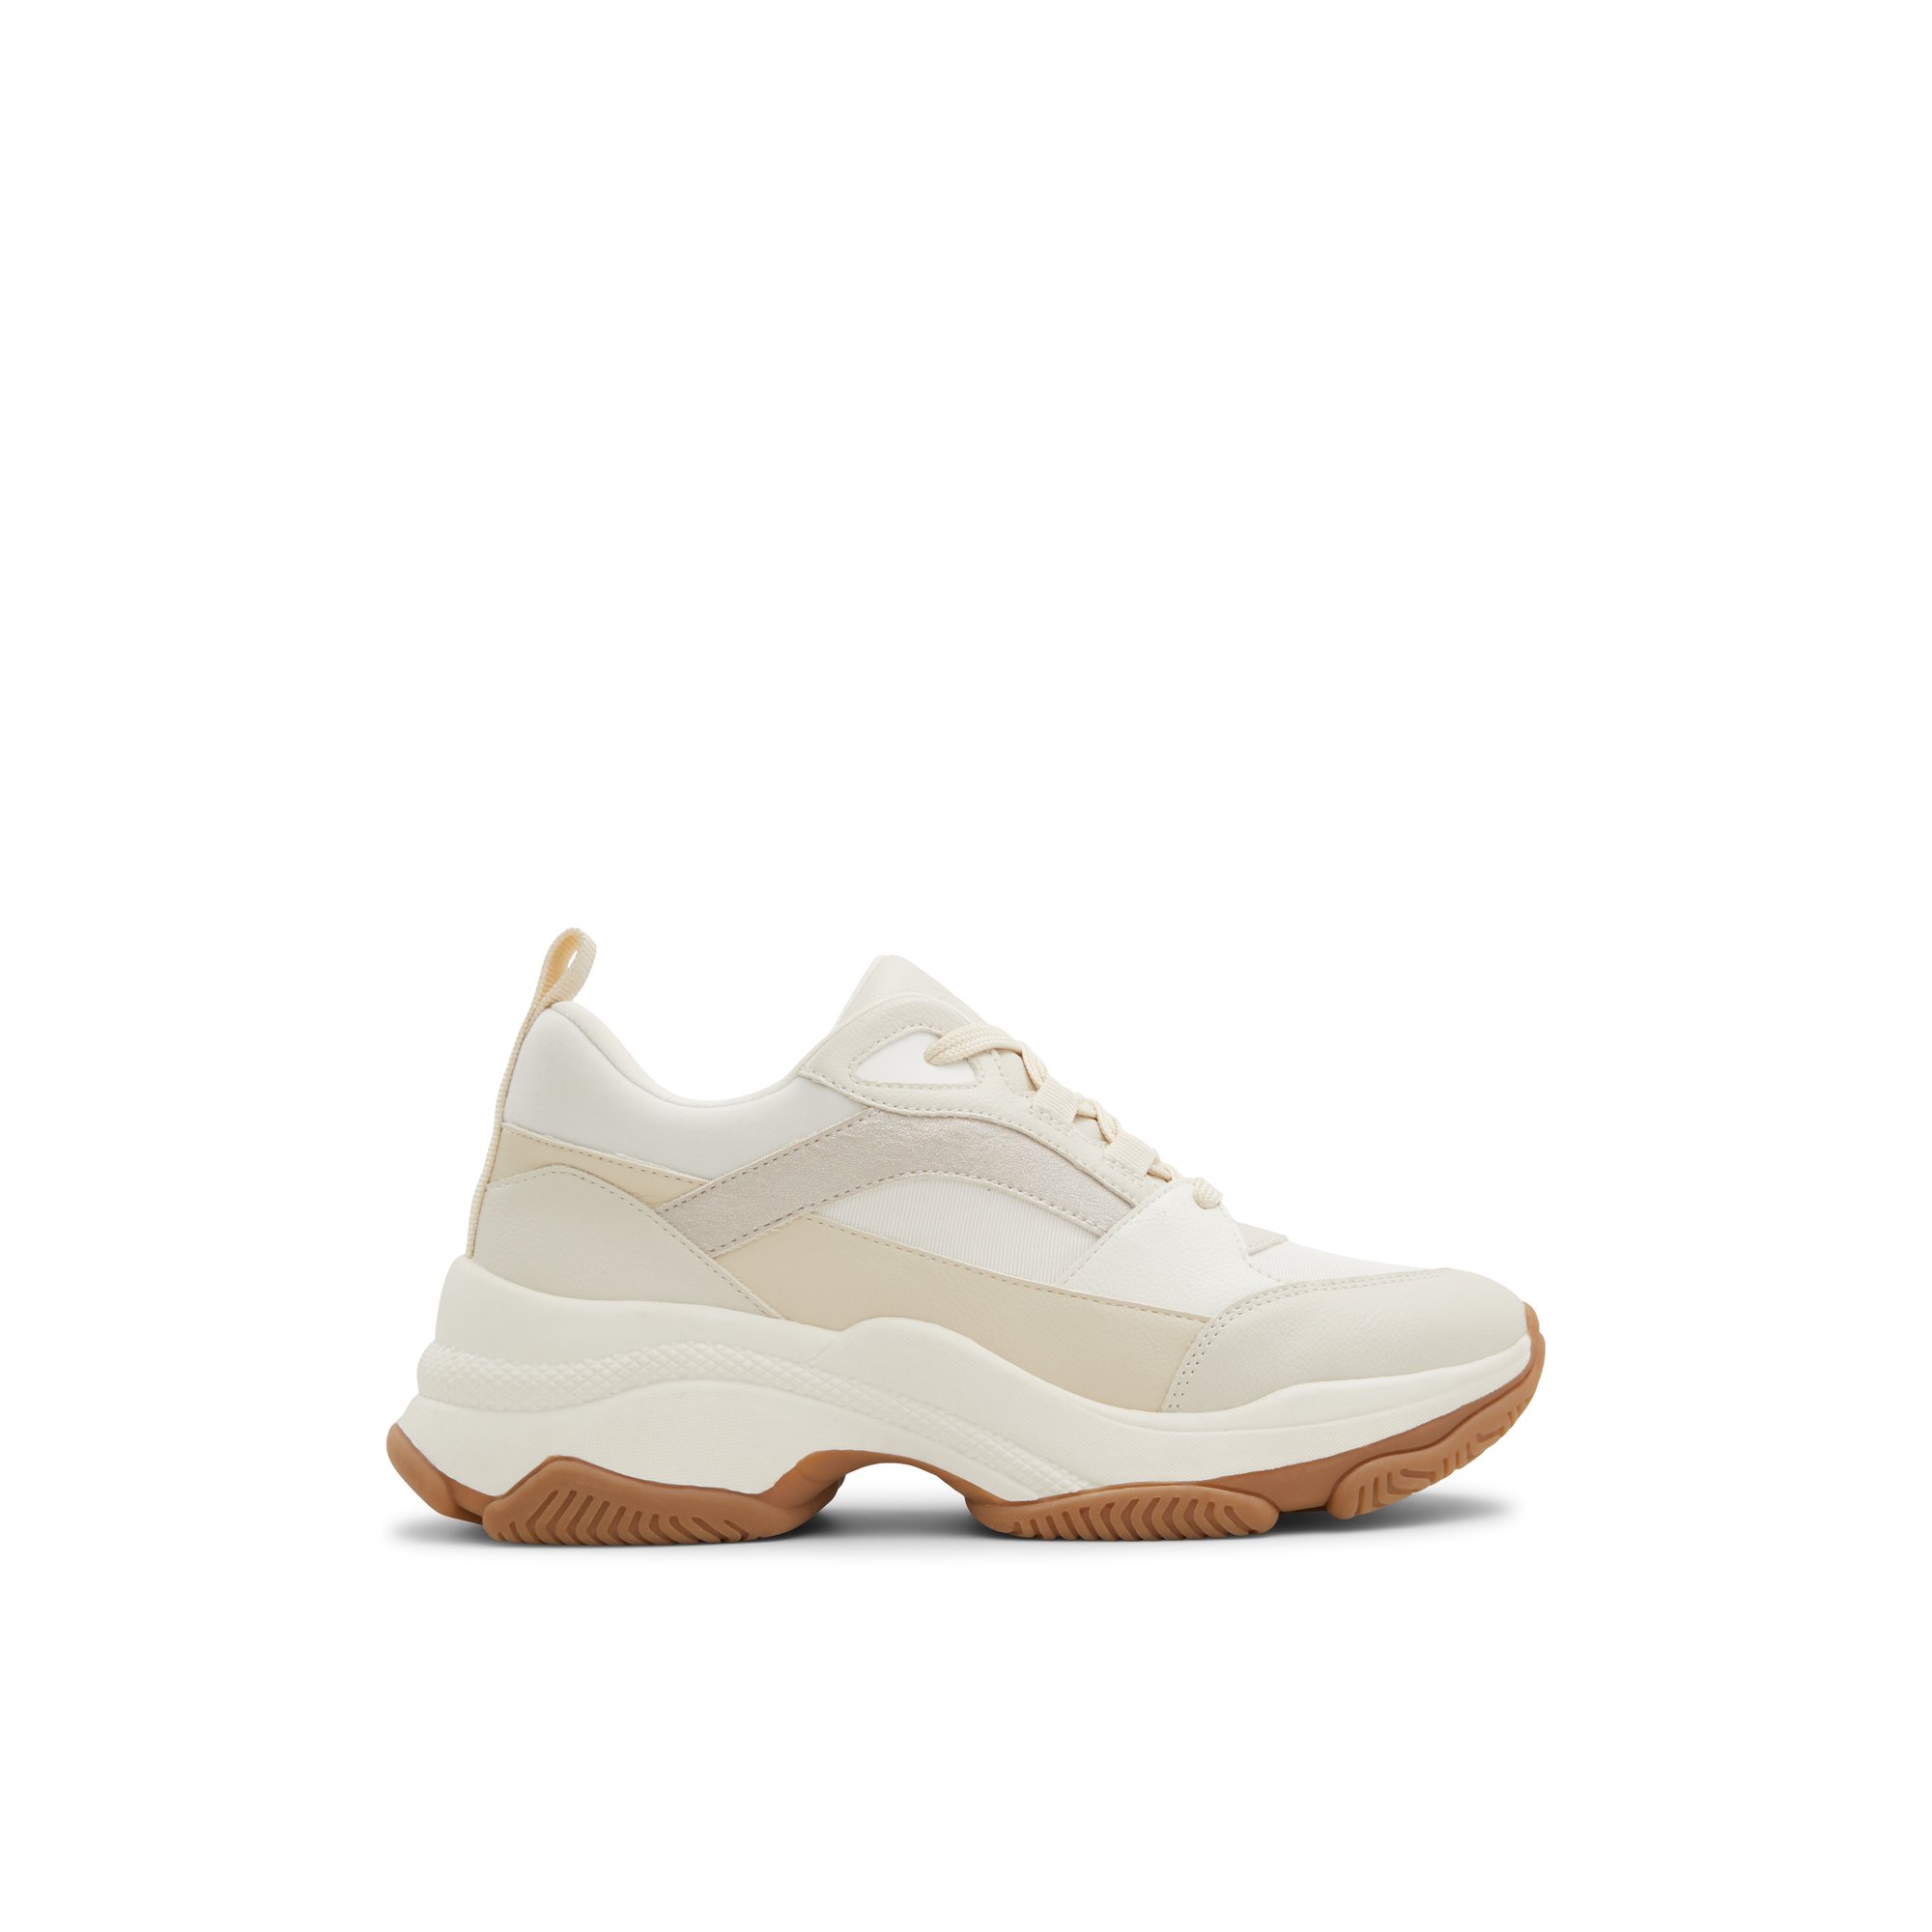 ALDO Valleyia - Women's Sneakers Athletic - White